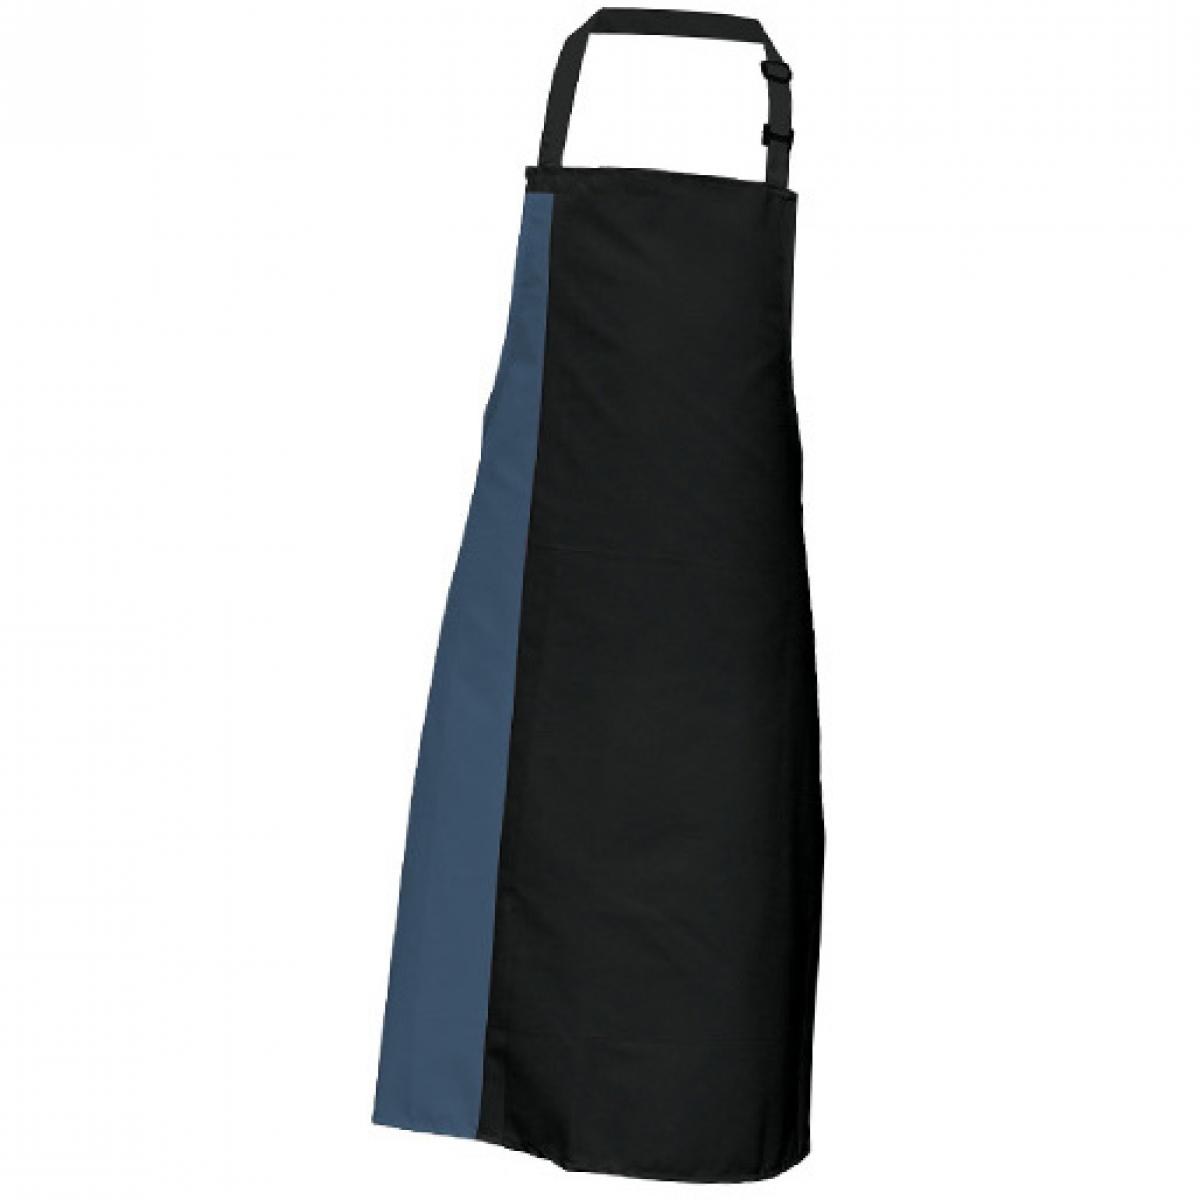 Hersteller: Link Kitchen Wear Herstellernummer: DS8572 Artikelbezeichnung: Duo Apron - 72 x 85 cm - Waschbar bis 60 °C Farbe: Black/Postman Grey (ca. Pantone 7545)